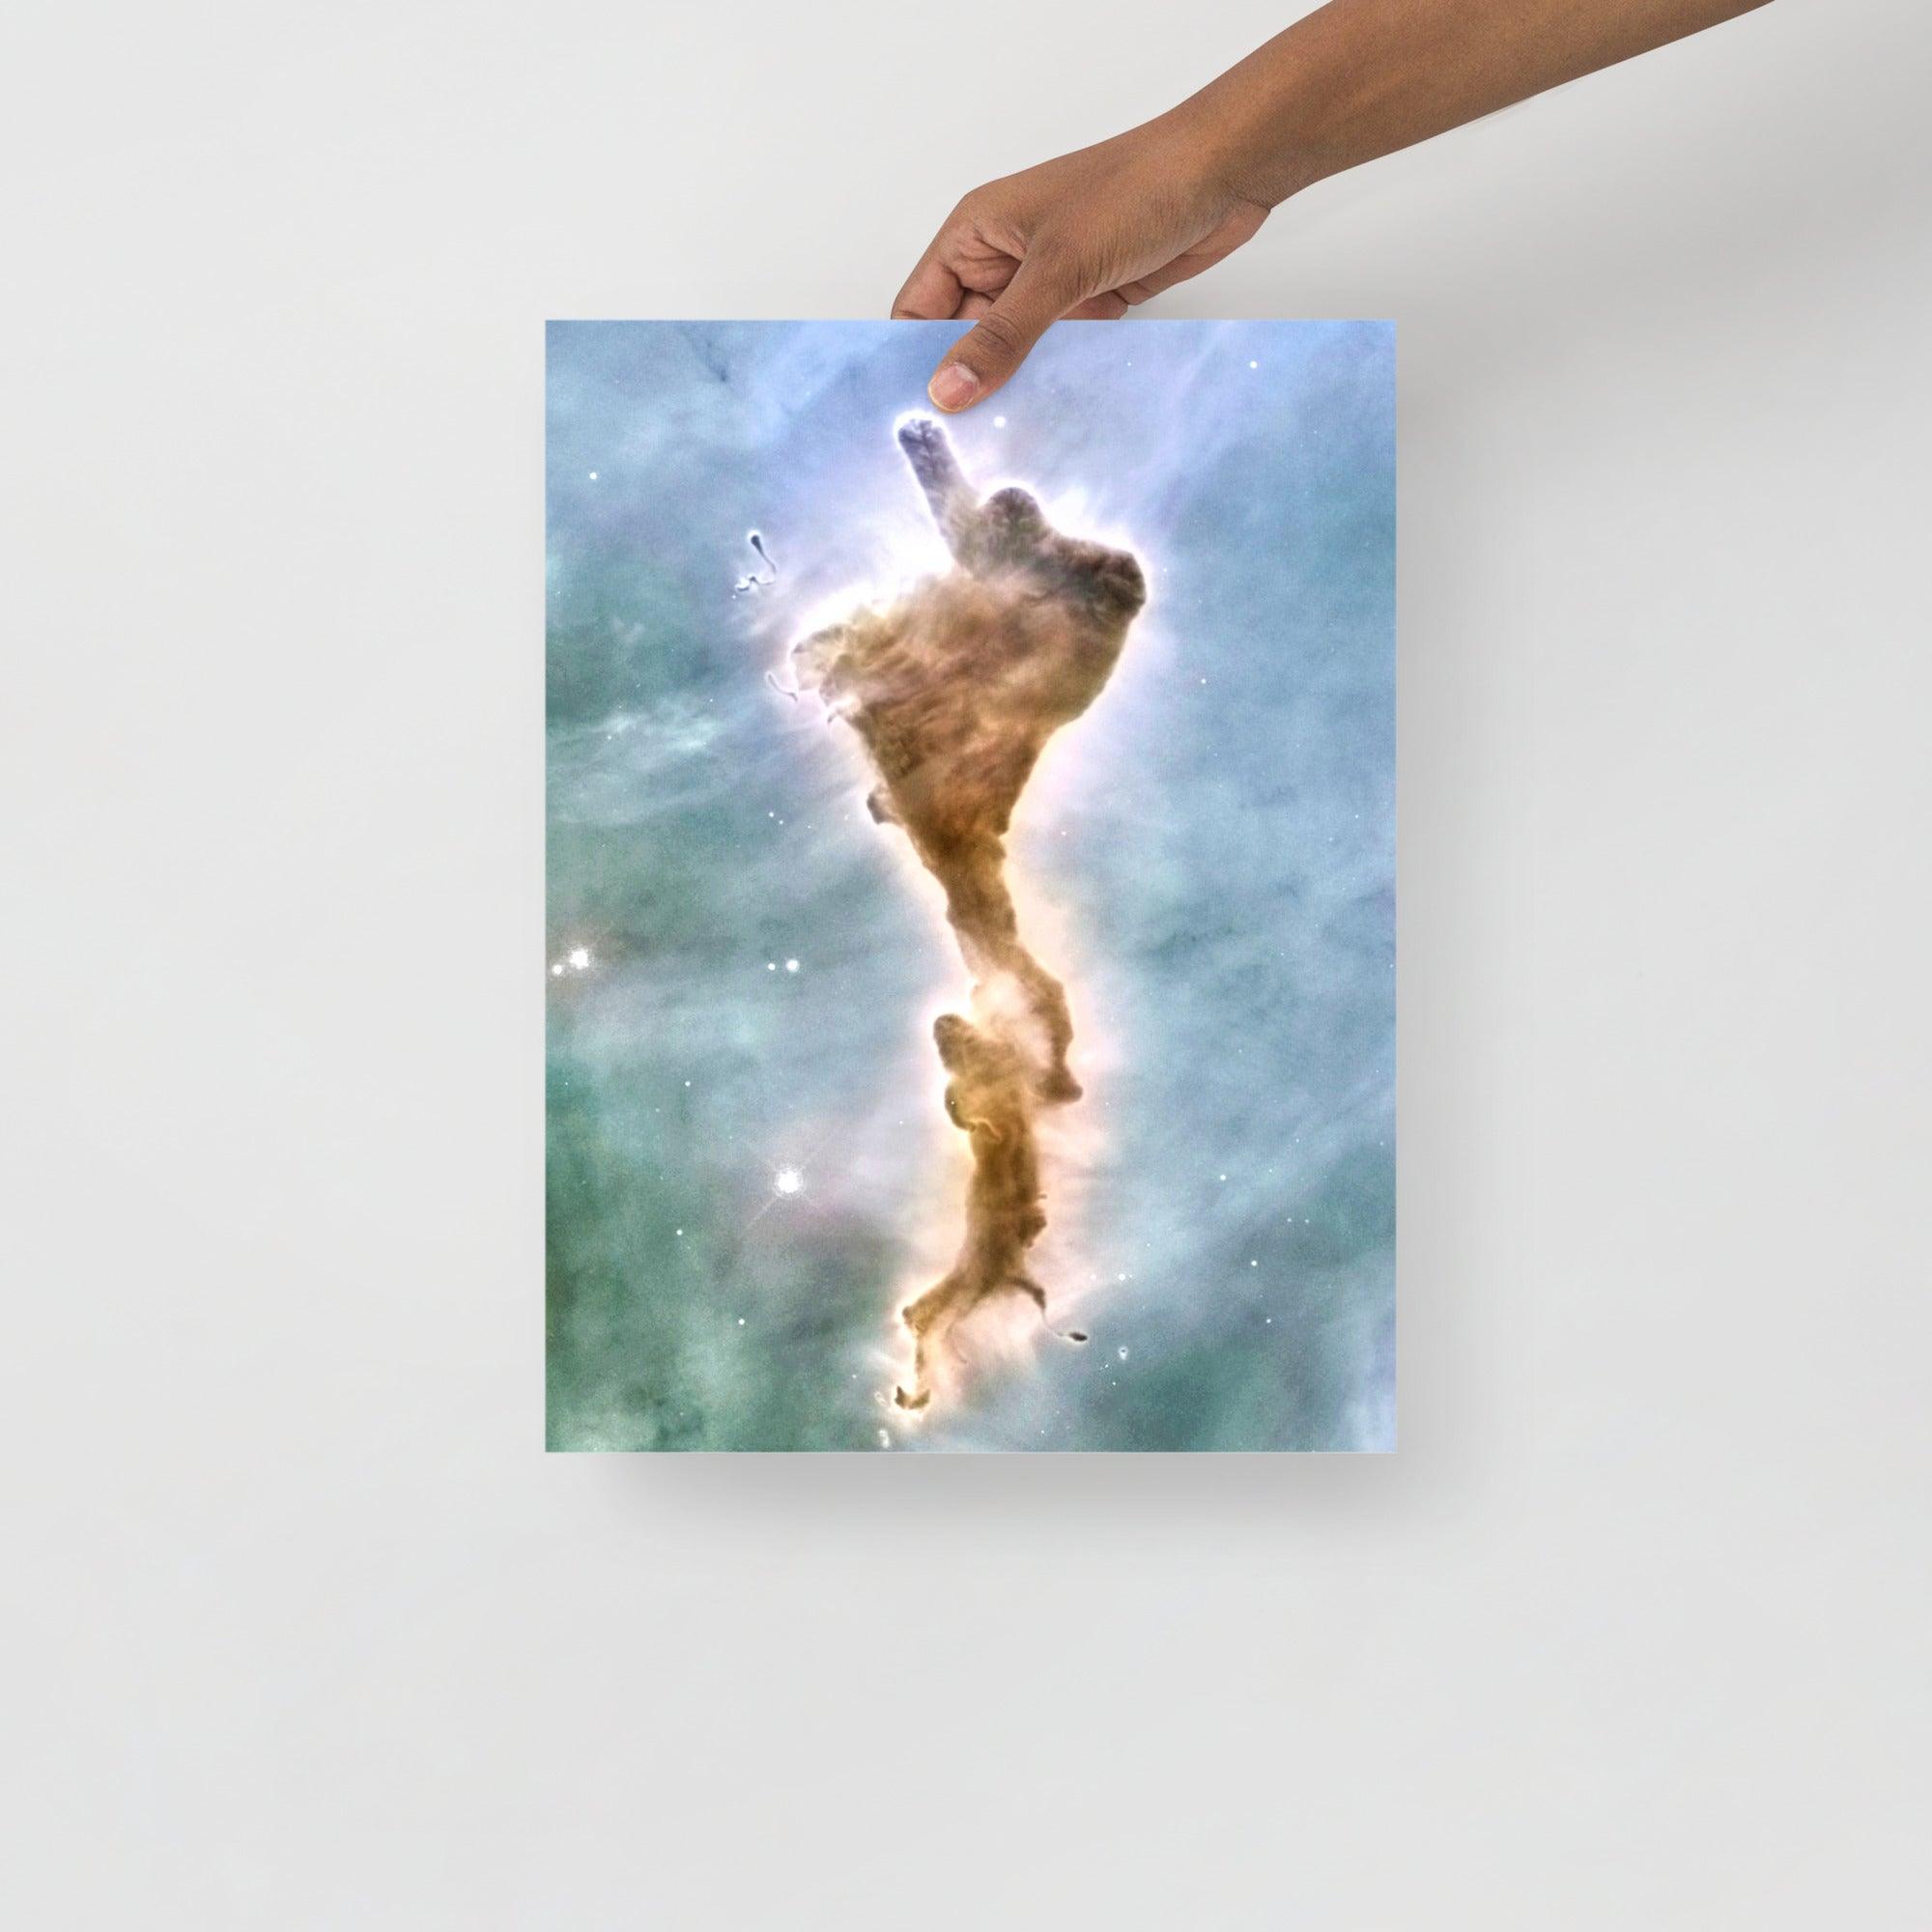 A Finger of God (Carina Nebula) poster on a plain backdrop in size 12x16”.